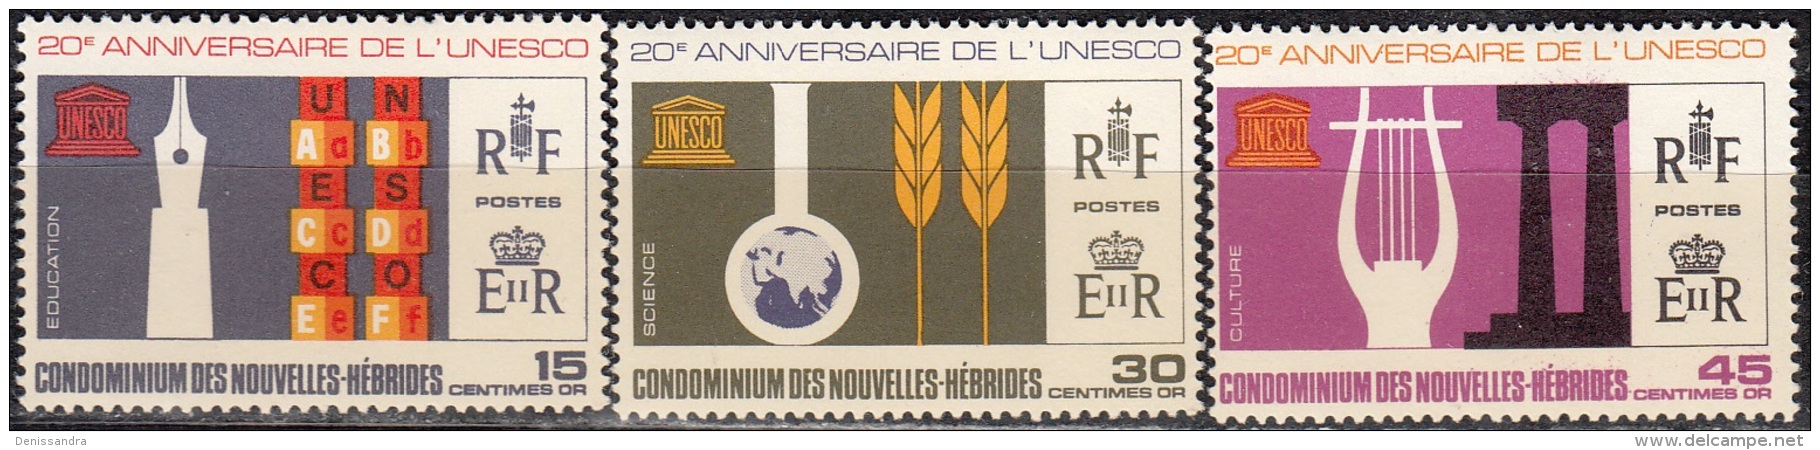 Nouvelles Hebrides 1966 Michel 251 - 253 Neuf ** Cote (2005) 6.00 Euro 20 Ans UNESCO - Neufs